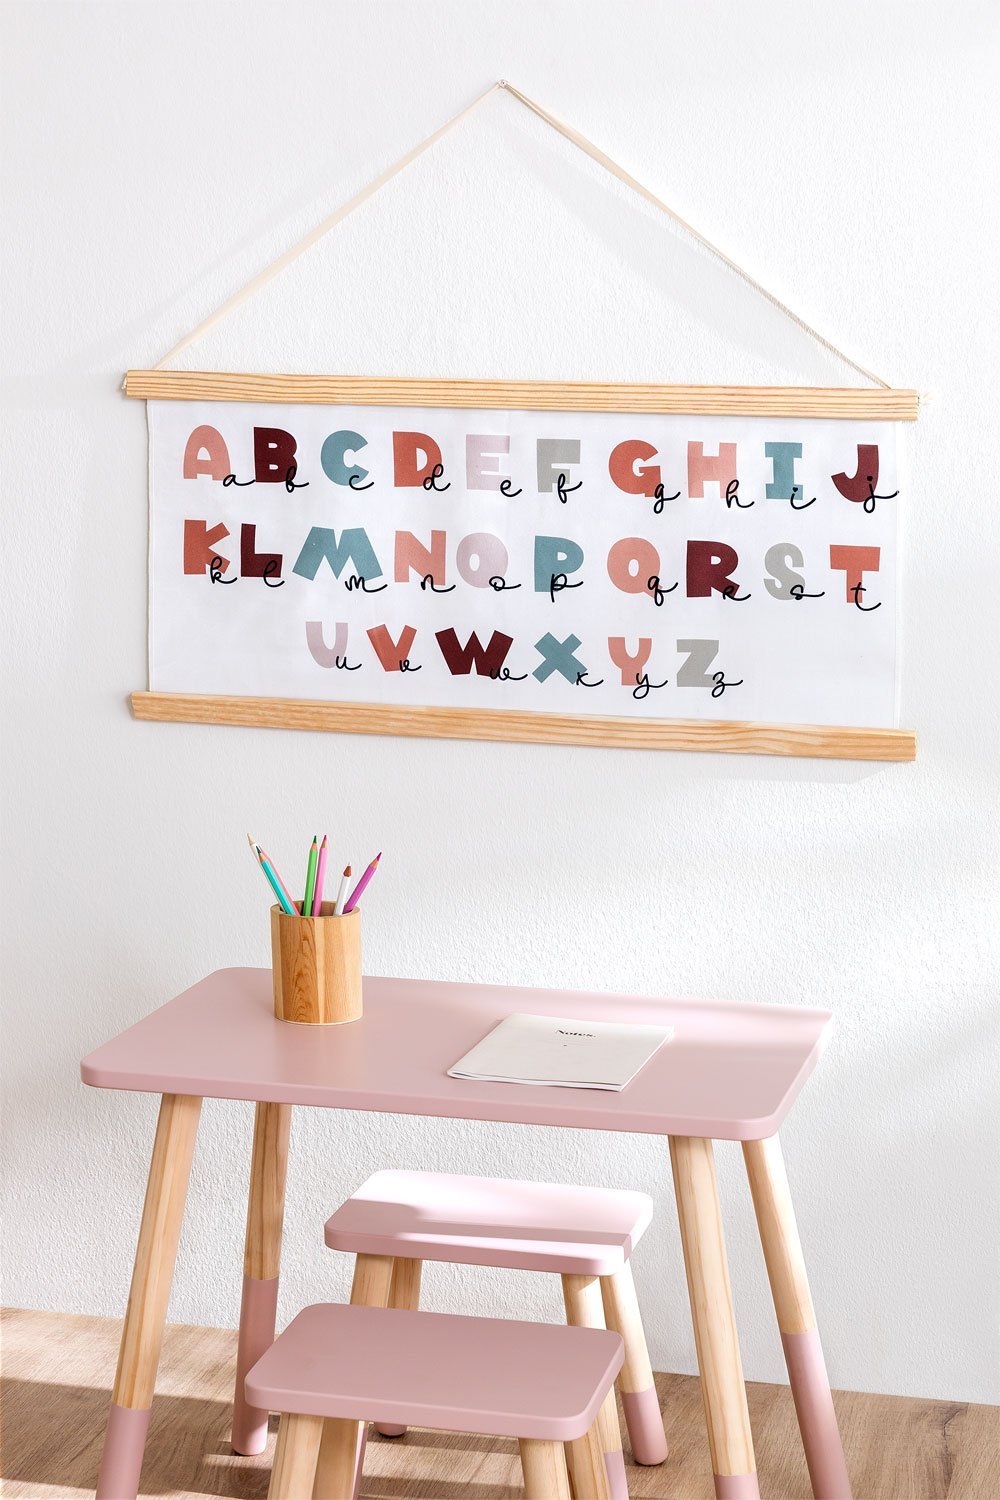 Alfabet edukacyjny dla dzieci Aibic, obrazek w galerii 1